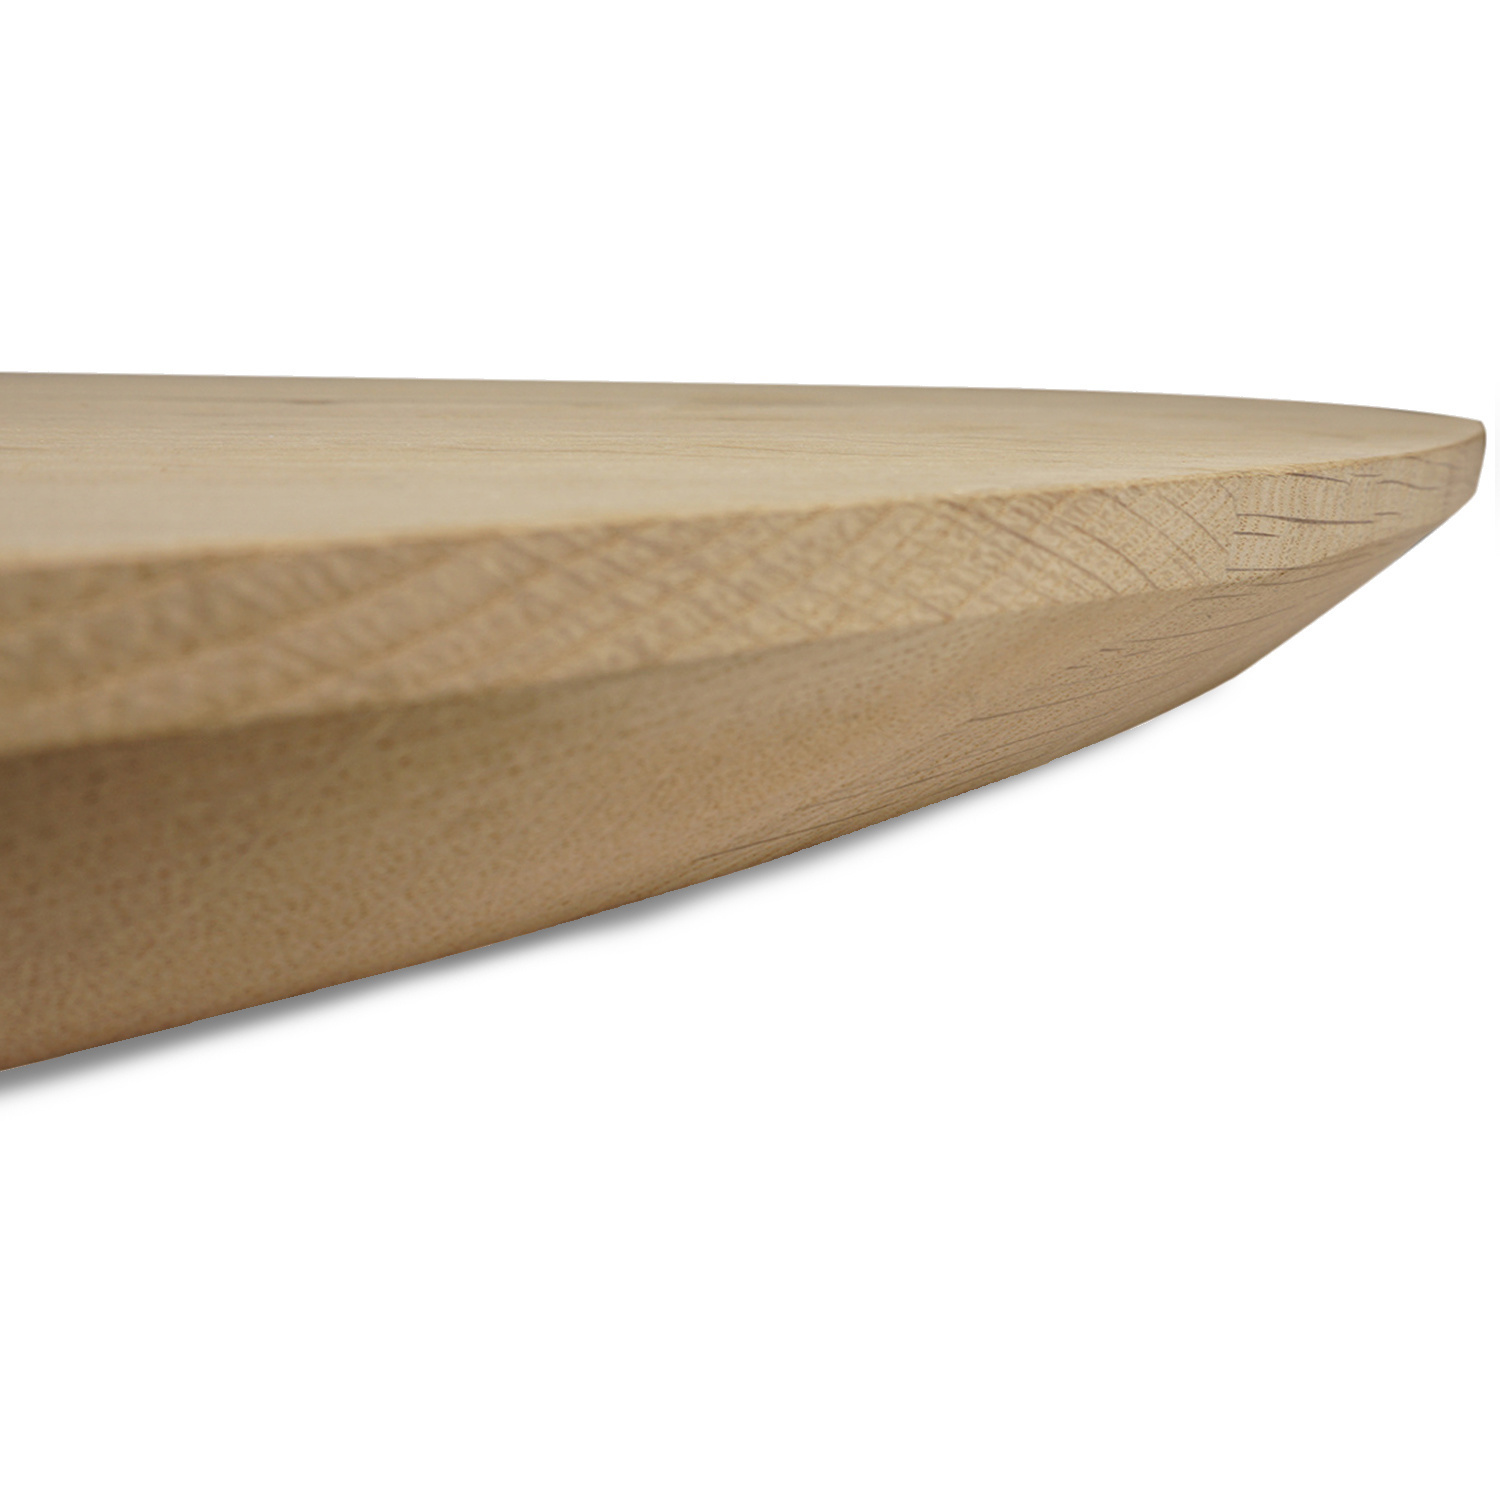  Tischplatte Eiche oval - 4 cm dick - Eichenholz Rustikal - Ellipse Eiche Tischplatte massiv - HF 8-12%